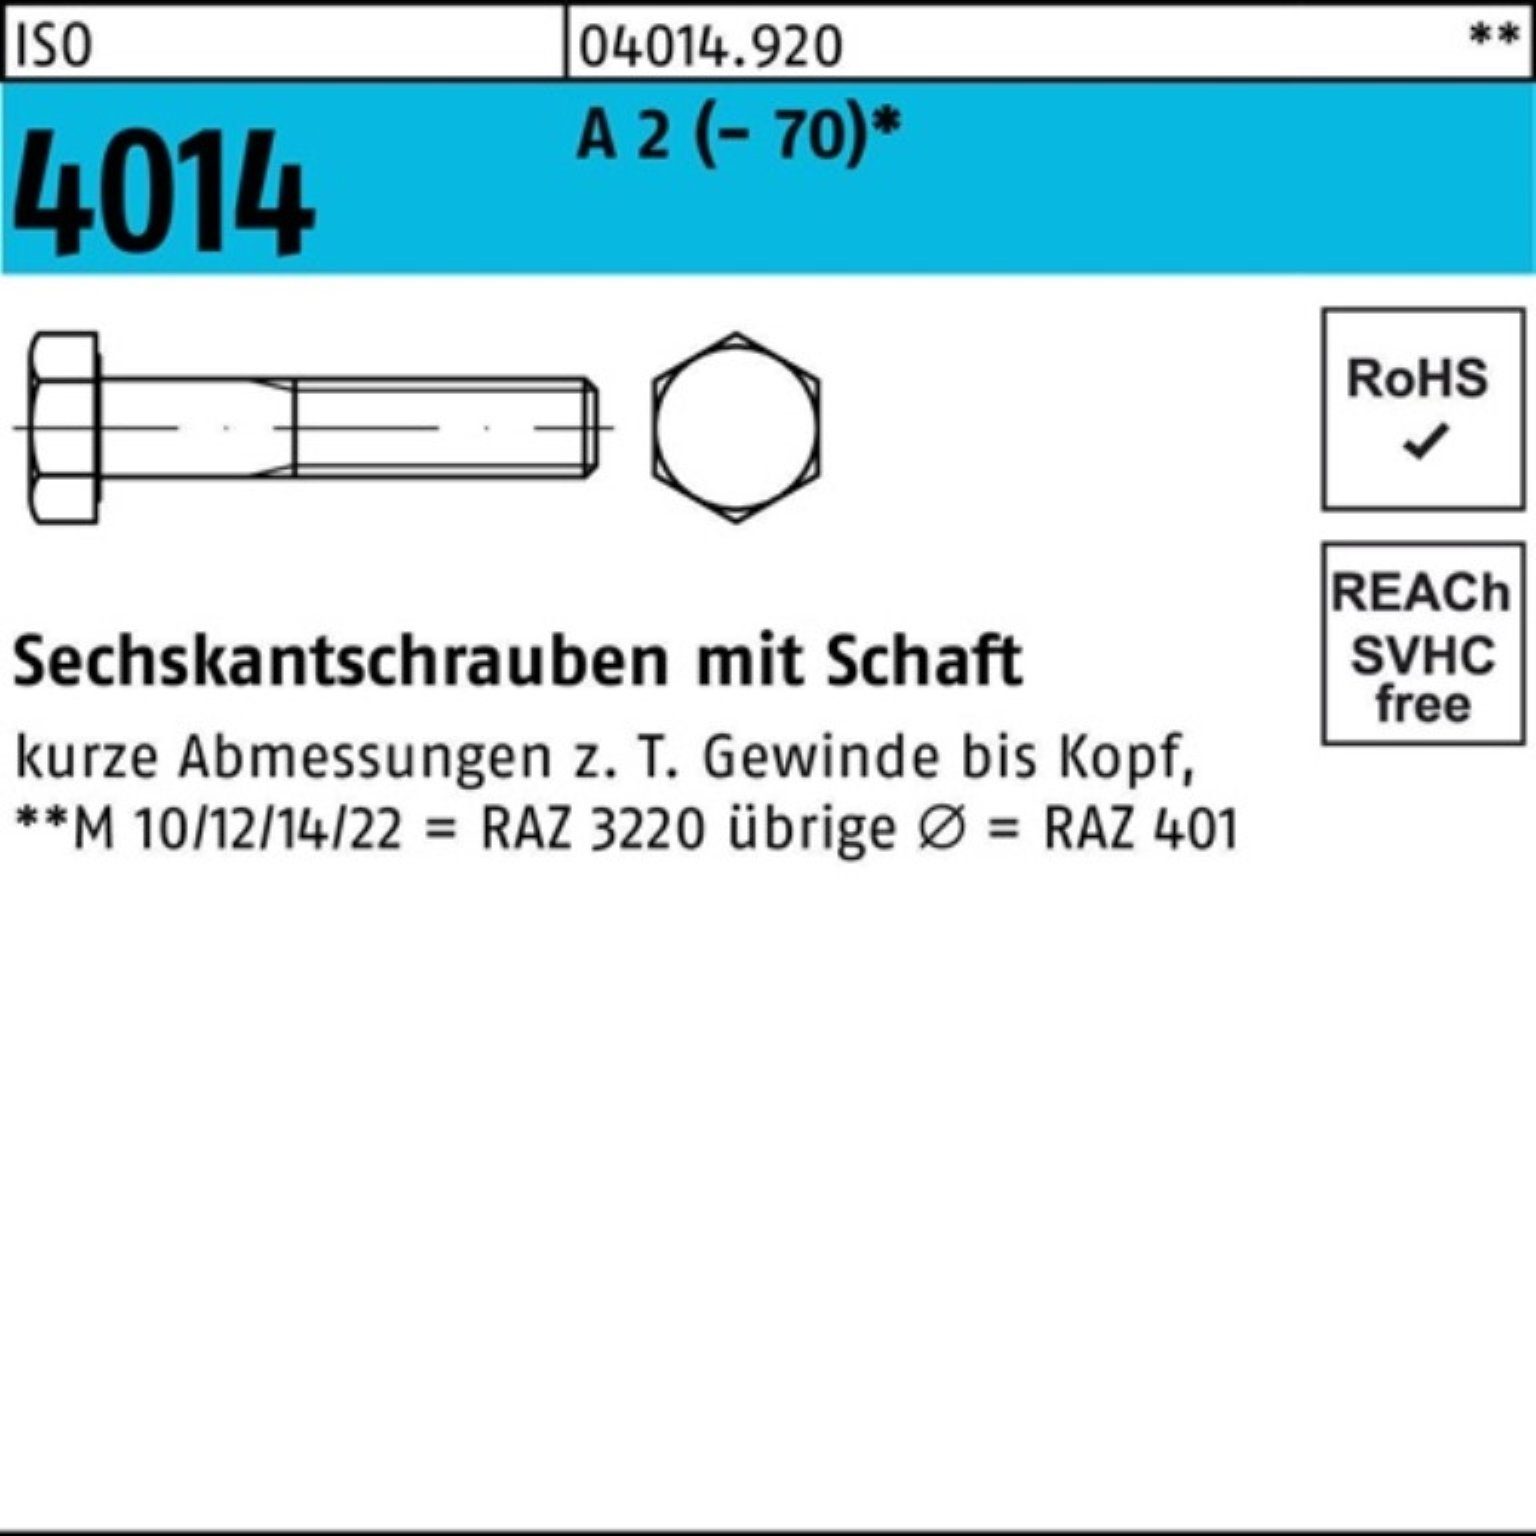 Bufab Sechskantschraube 100er Pack Sechskantschraube ISO 4014 Schaft M10x 200 A 2 (70) 1 St